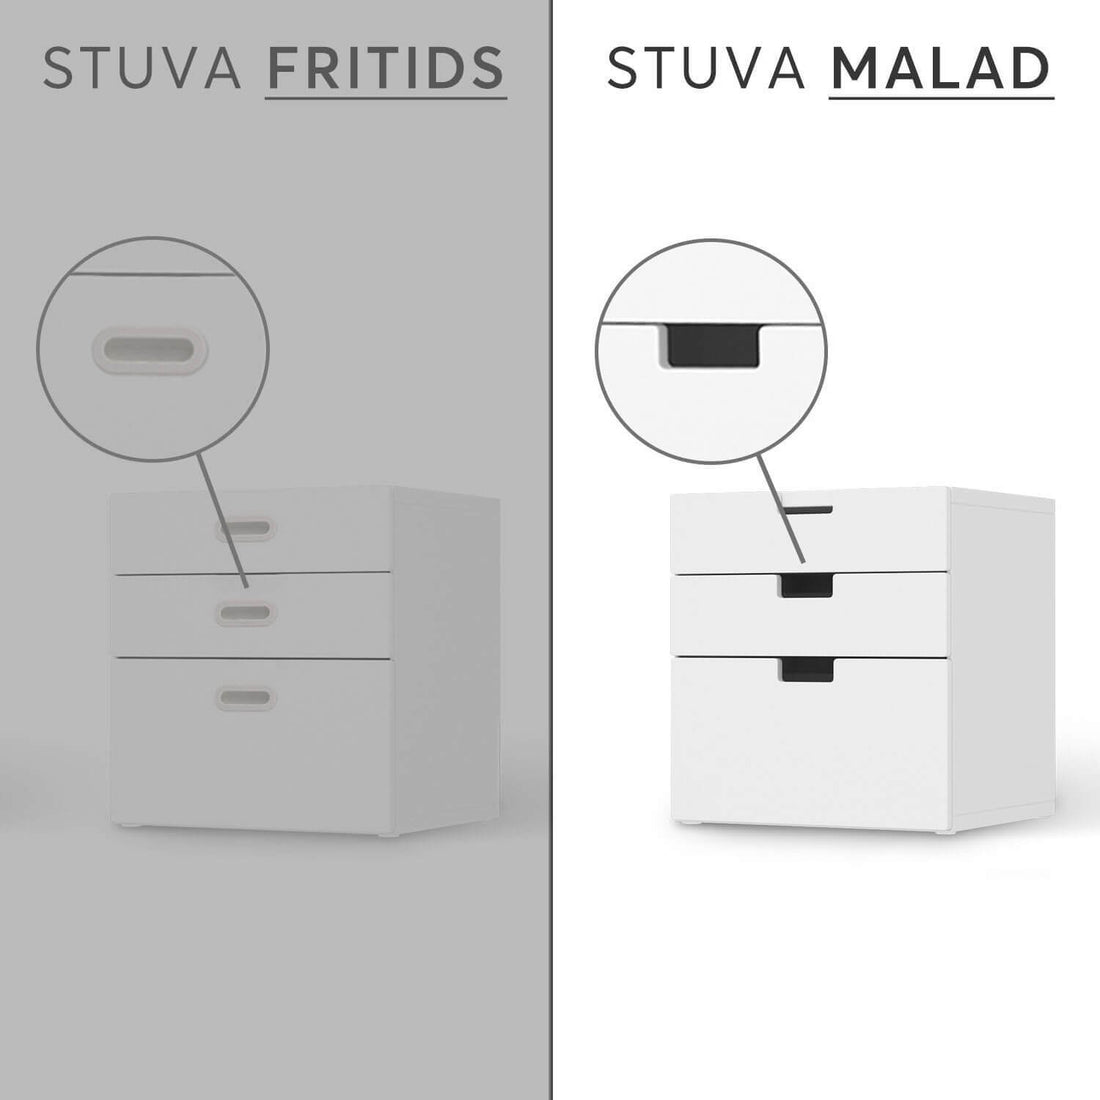 Folie für Möbel IKEA Stuva / Malad Kommode - 3 Schubladen - Design: Blue Water